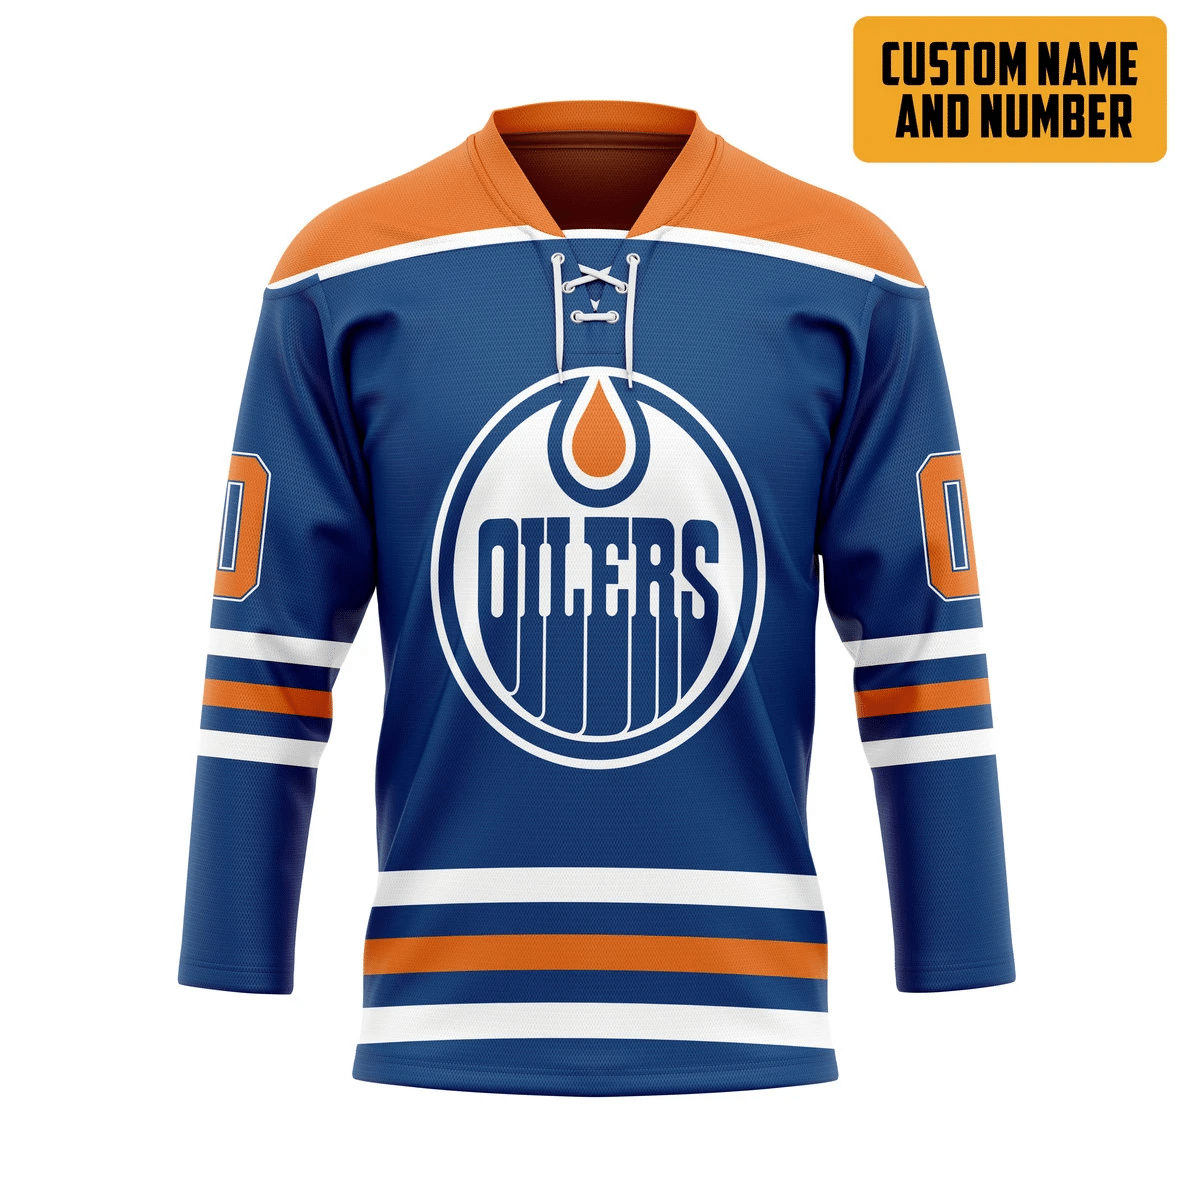 It's only $50 so don't miss out - Be sure to pick up a new hockey shirt today! 379